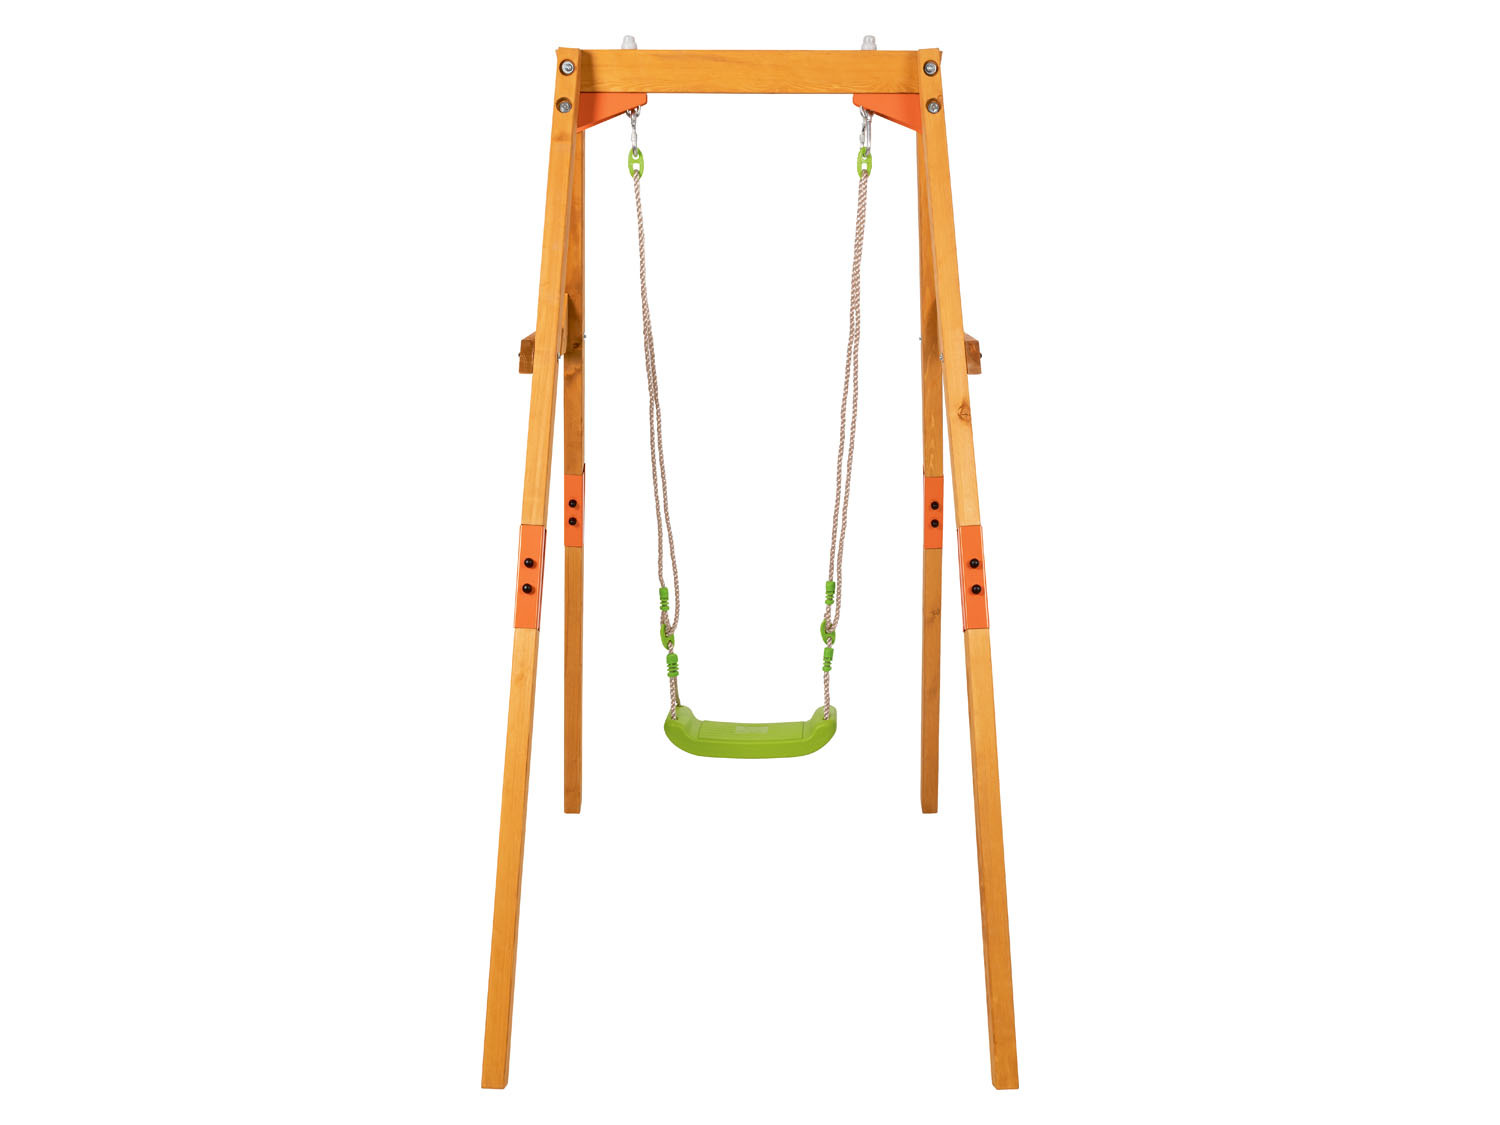 Playtive Kinder Holzschaukel, verstellbarer Seillä… mit